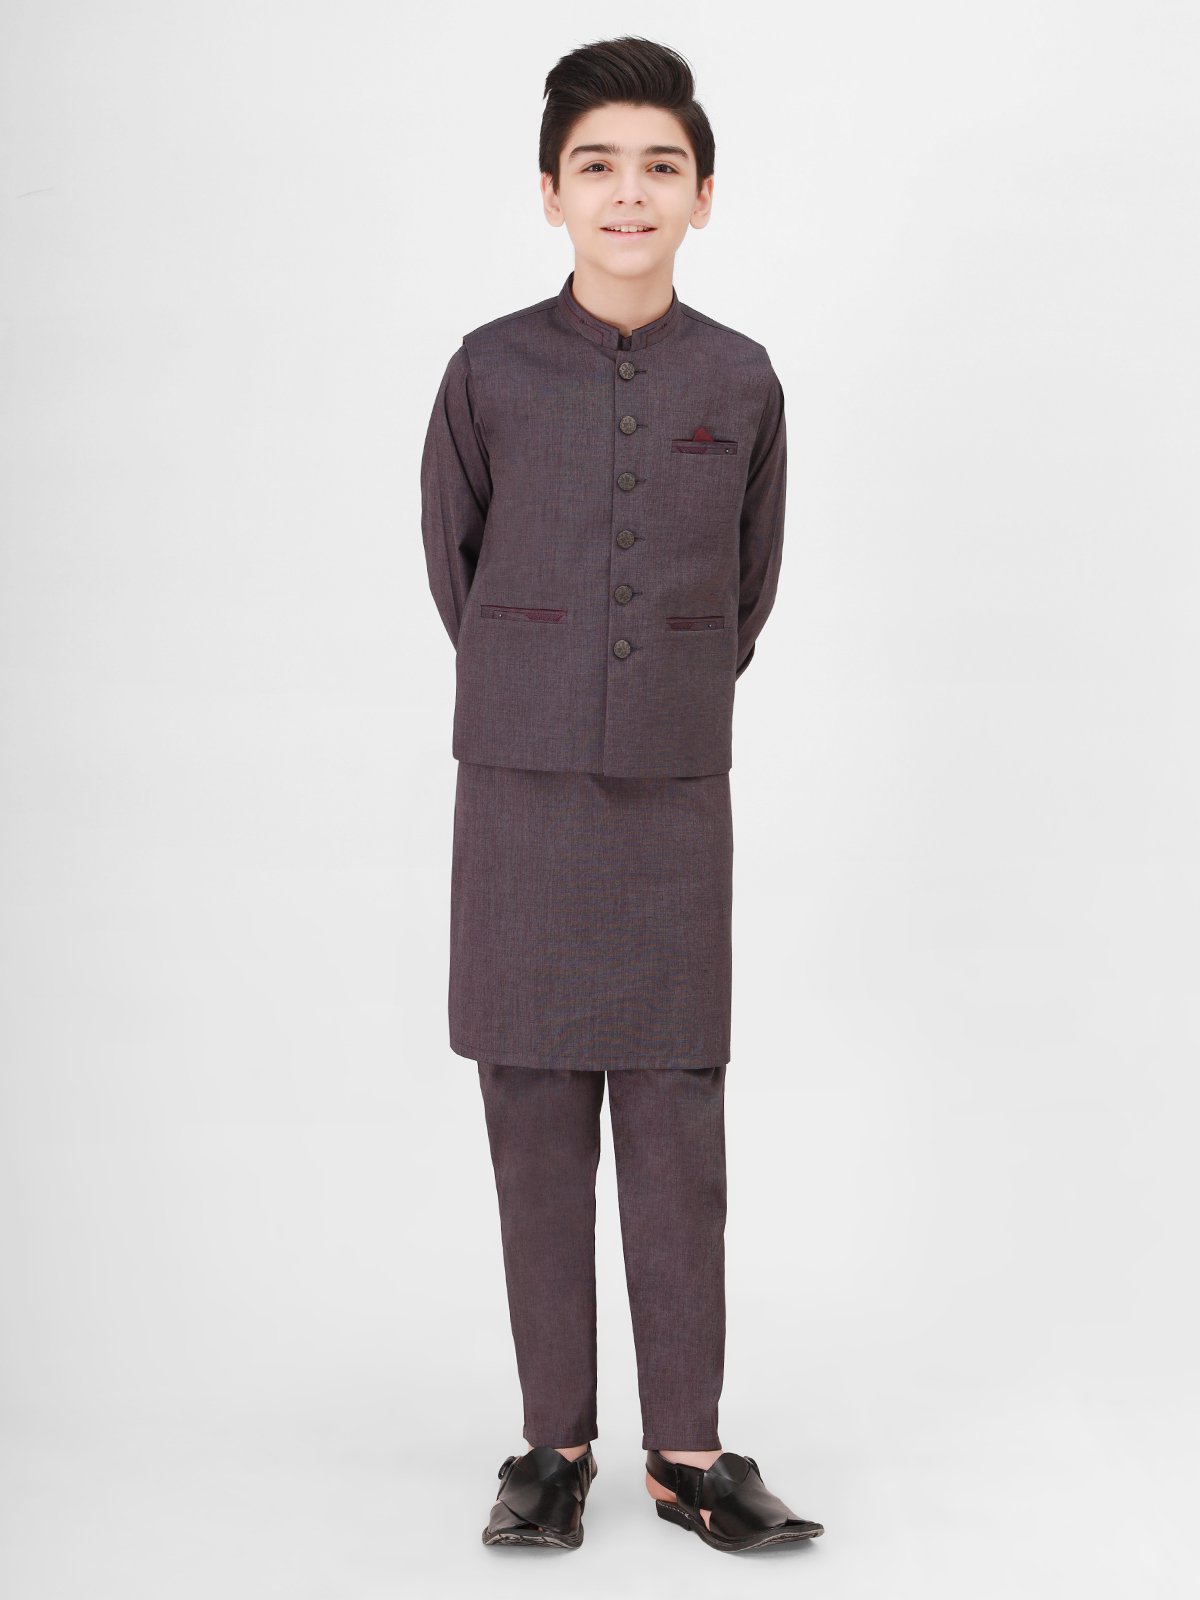 Boy's Purple Waist Coat Suit - EBTWCS21-25151